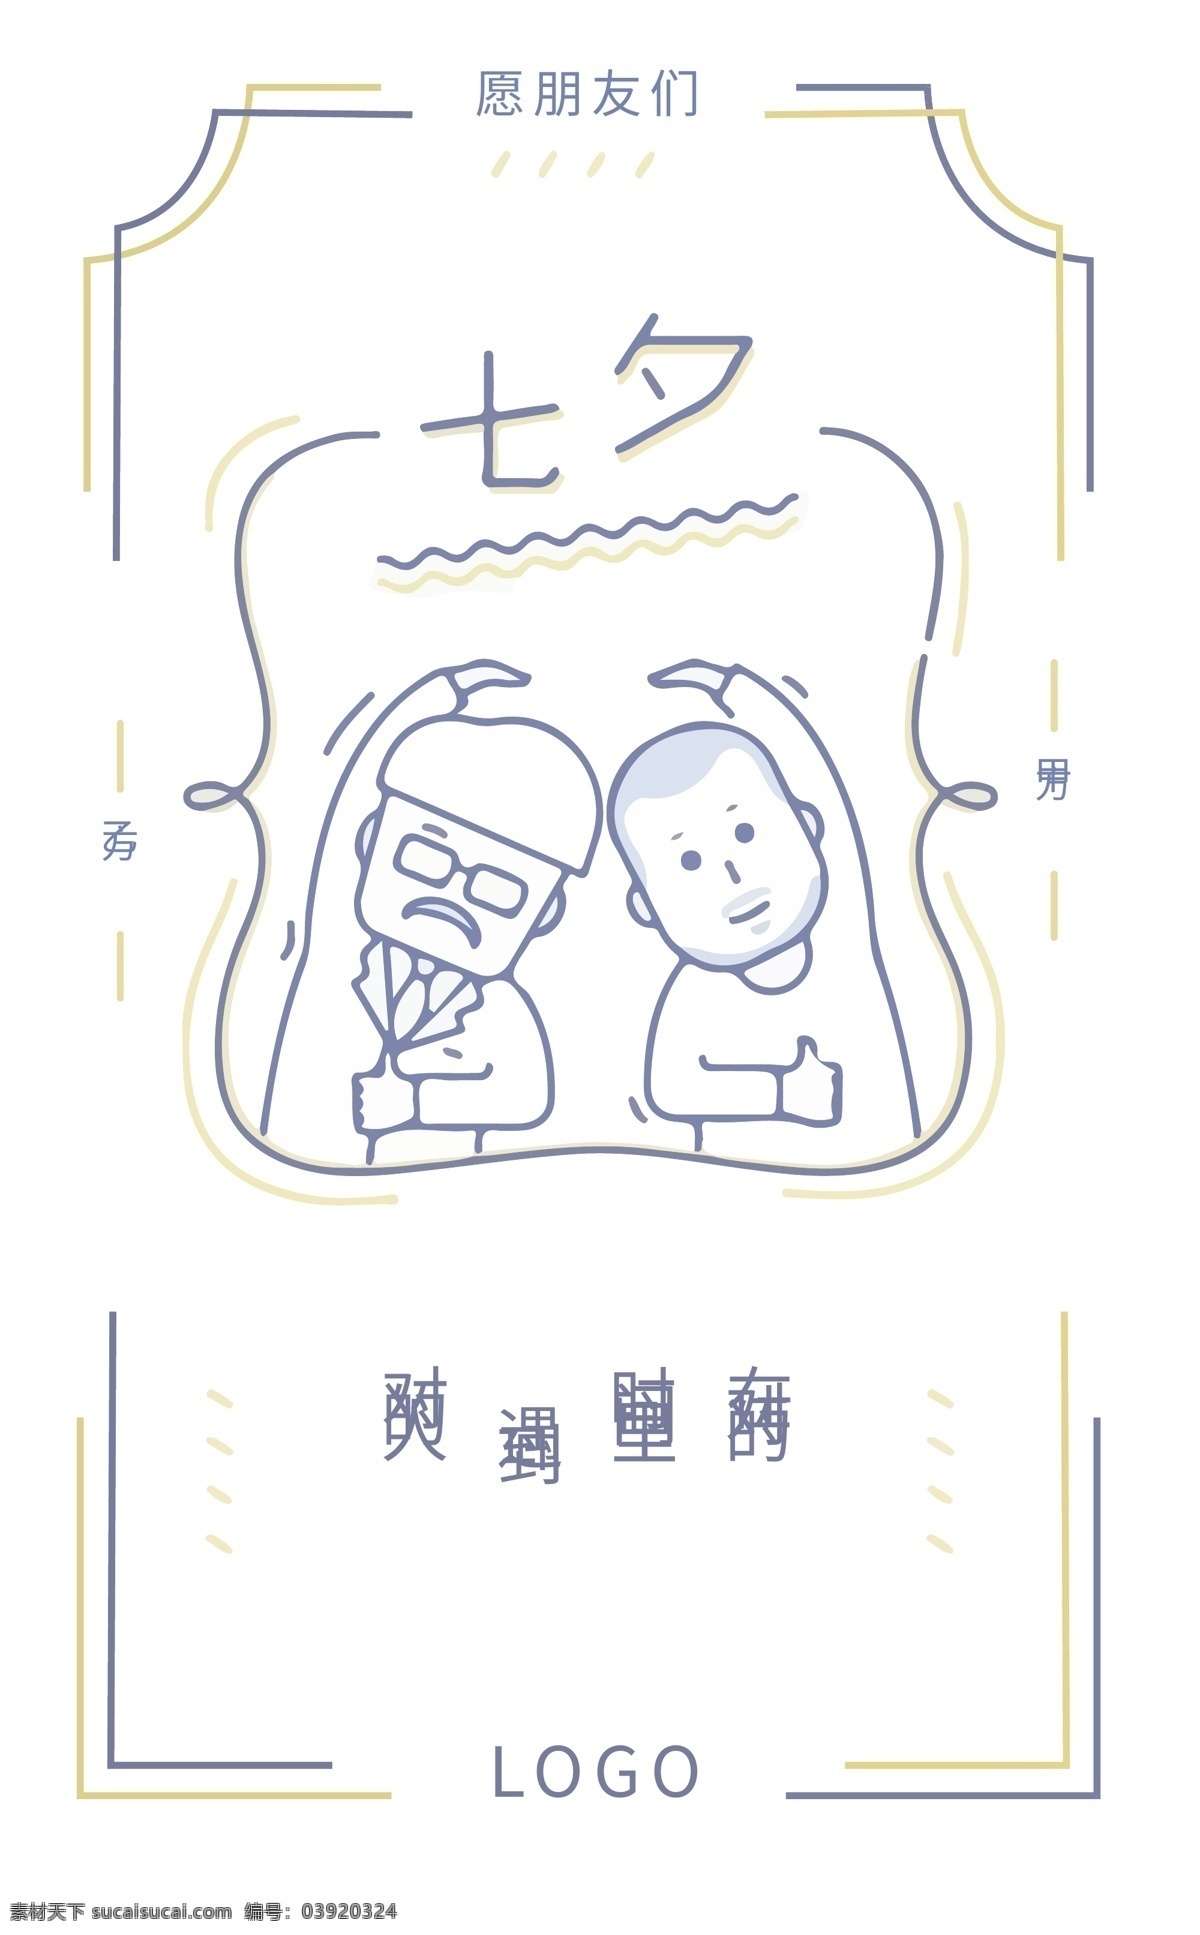 设计师 七夕节 节假日 客户 甲方 搞笑 对的人 创意